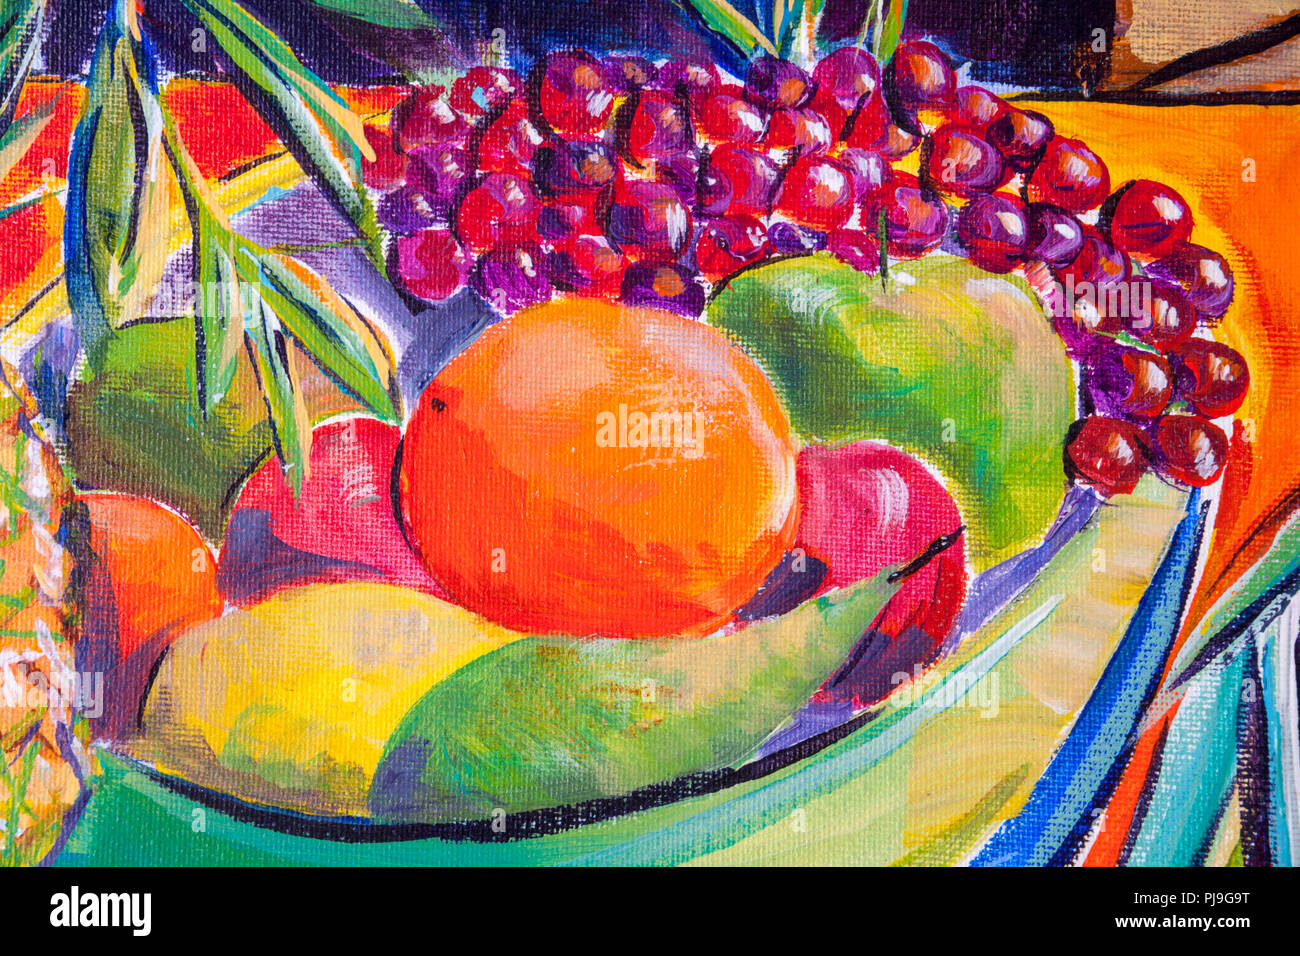 Dettagli di dipinti acrilico che mostra colore, texture e tecniche. Una coppa di frutta con uva, arance e pere. Foto Stock